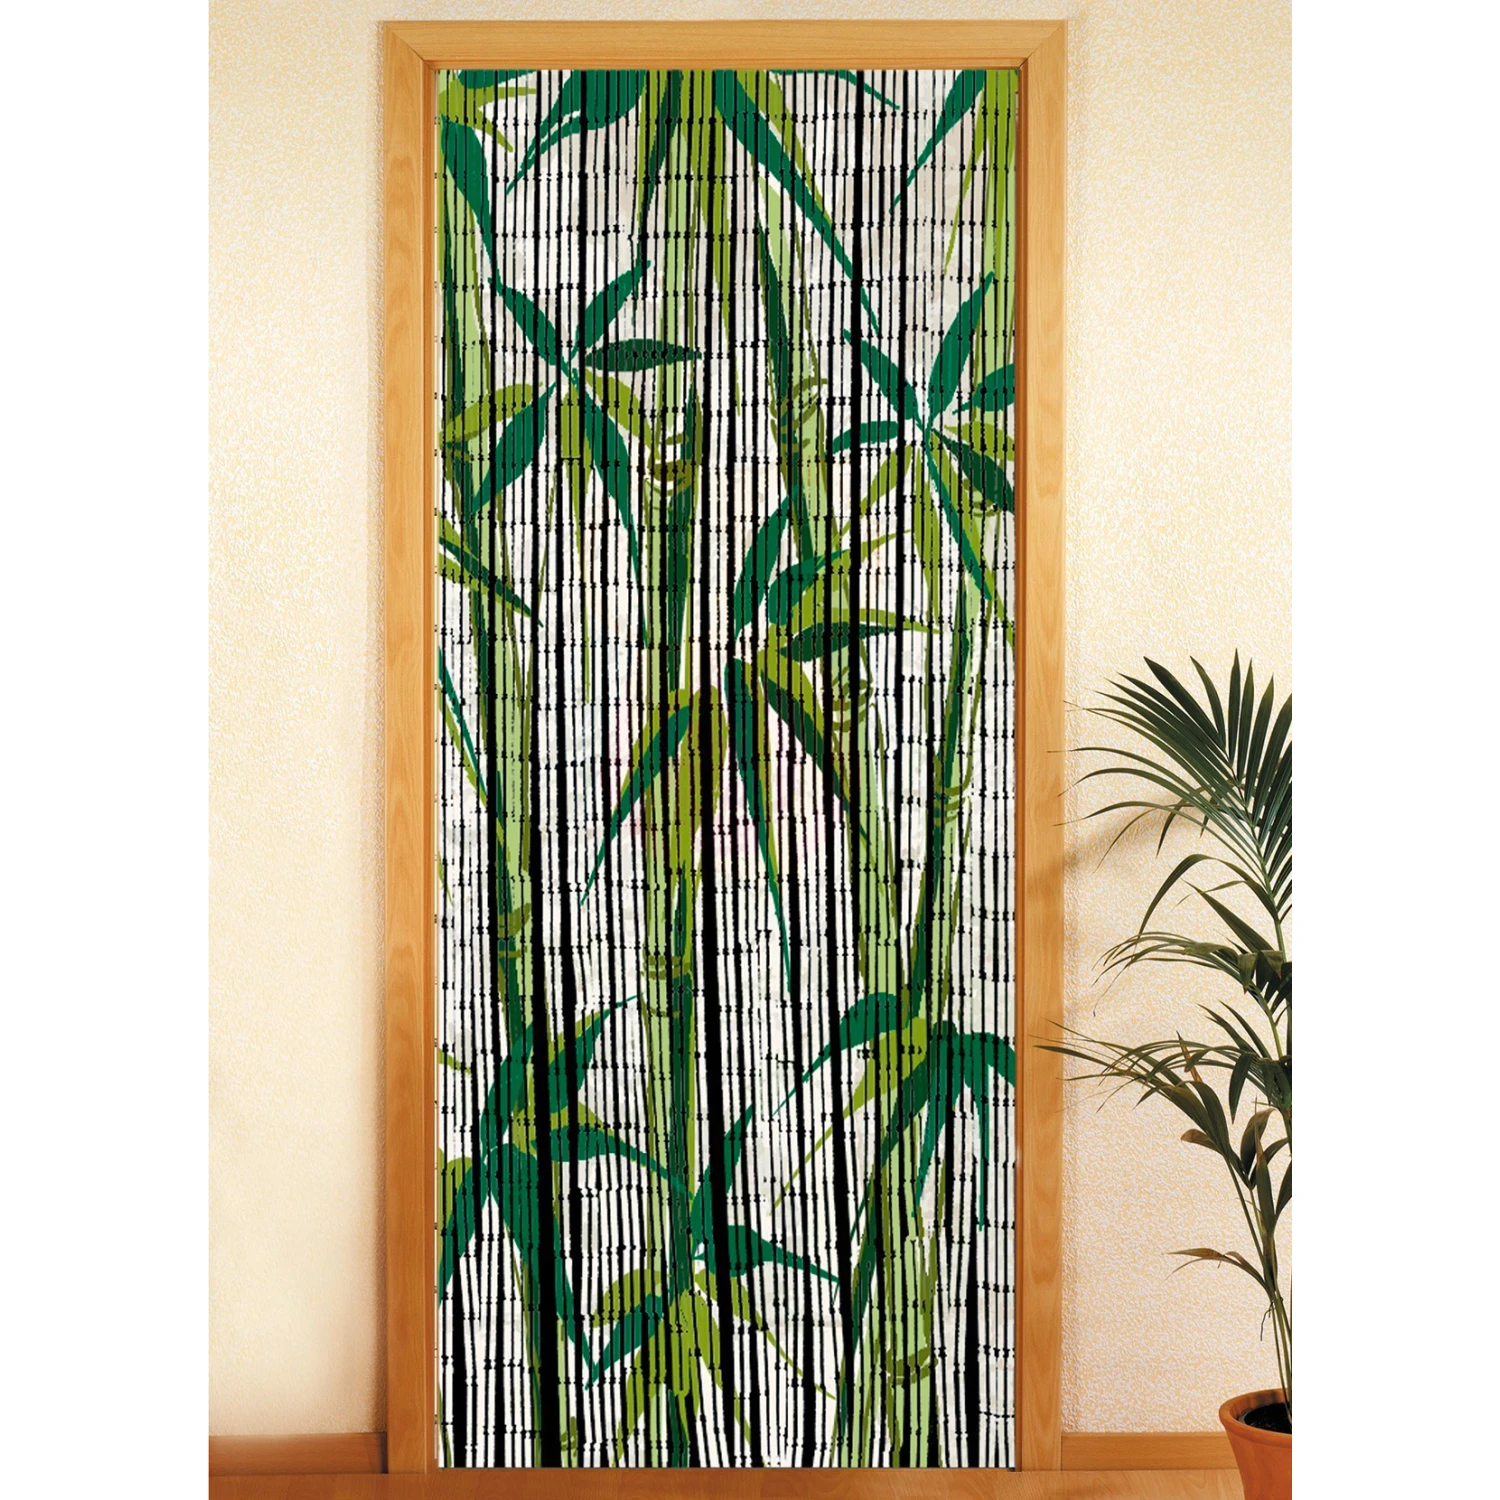 Дверные бамбуковые шторы купить. Бамбуковые шторы на дверь. Бамбуковые шторы на дверной проем. Дверные занавески из бамбука. Занавески из бамбука на дверной проем.